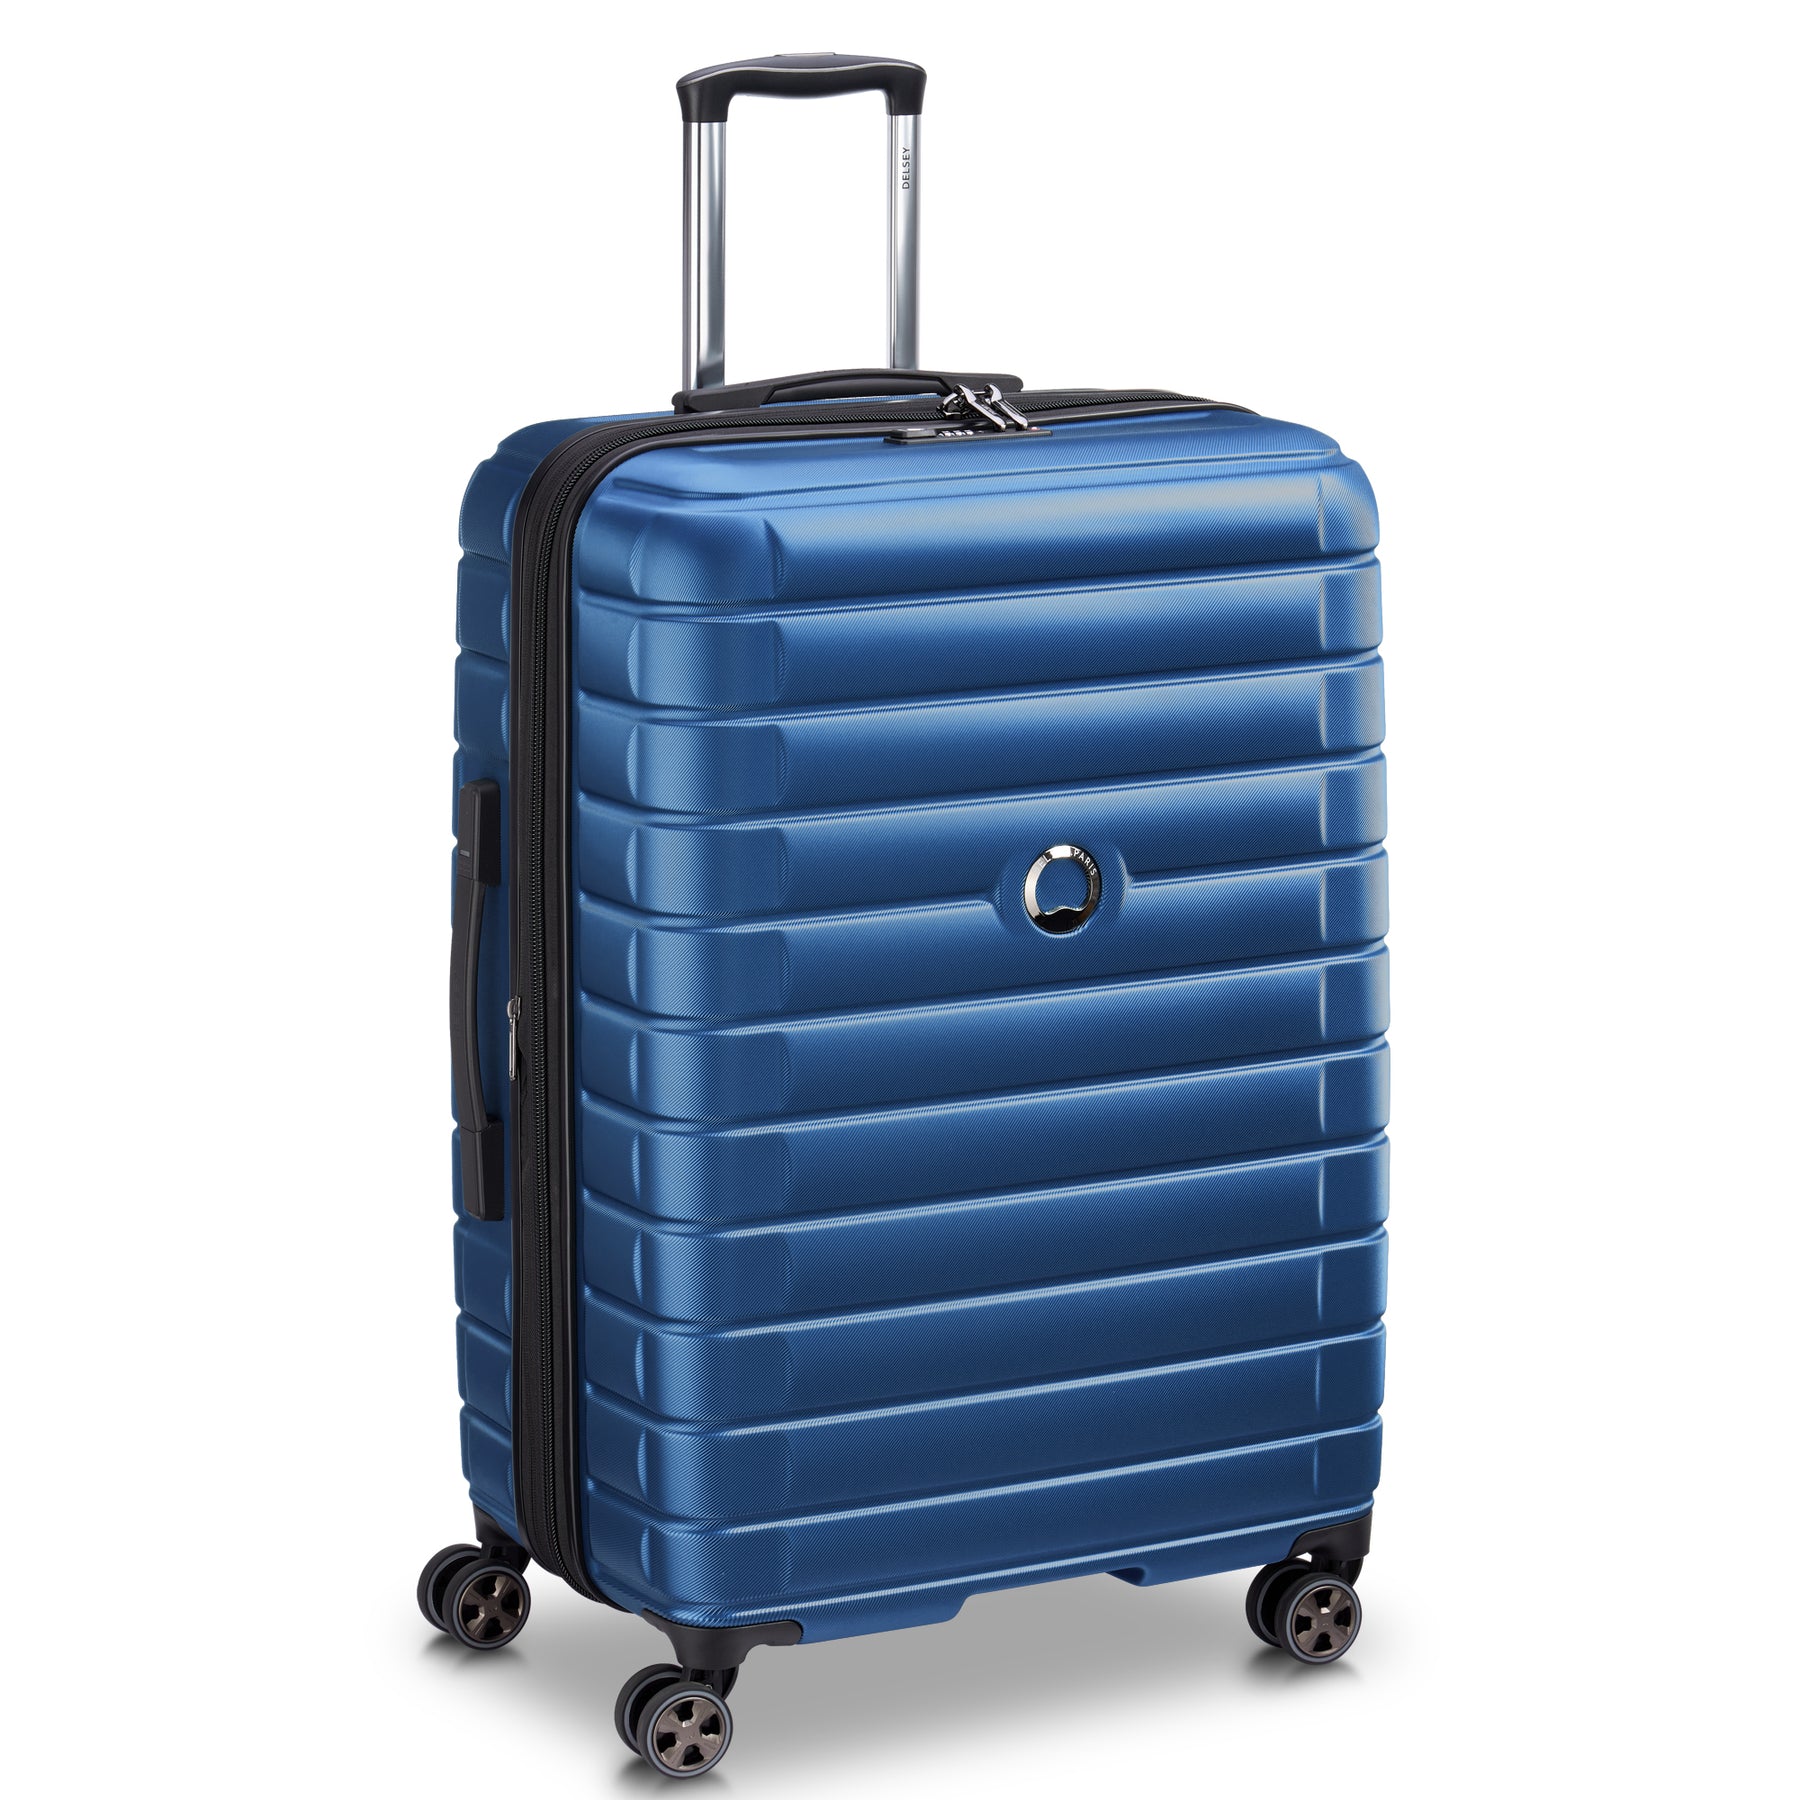 نکته خرید - قیمت روز چمدان دلسی مدل SHADOW 5.0 کد 2878831 سایز بزرگ خرید